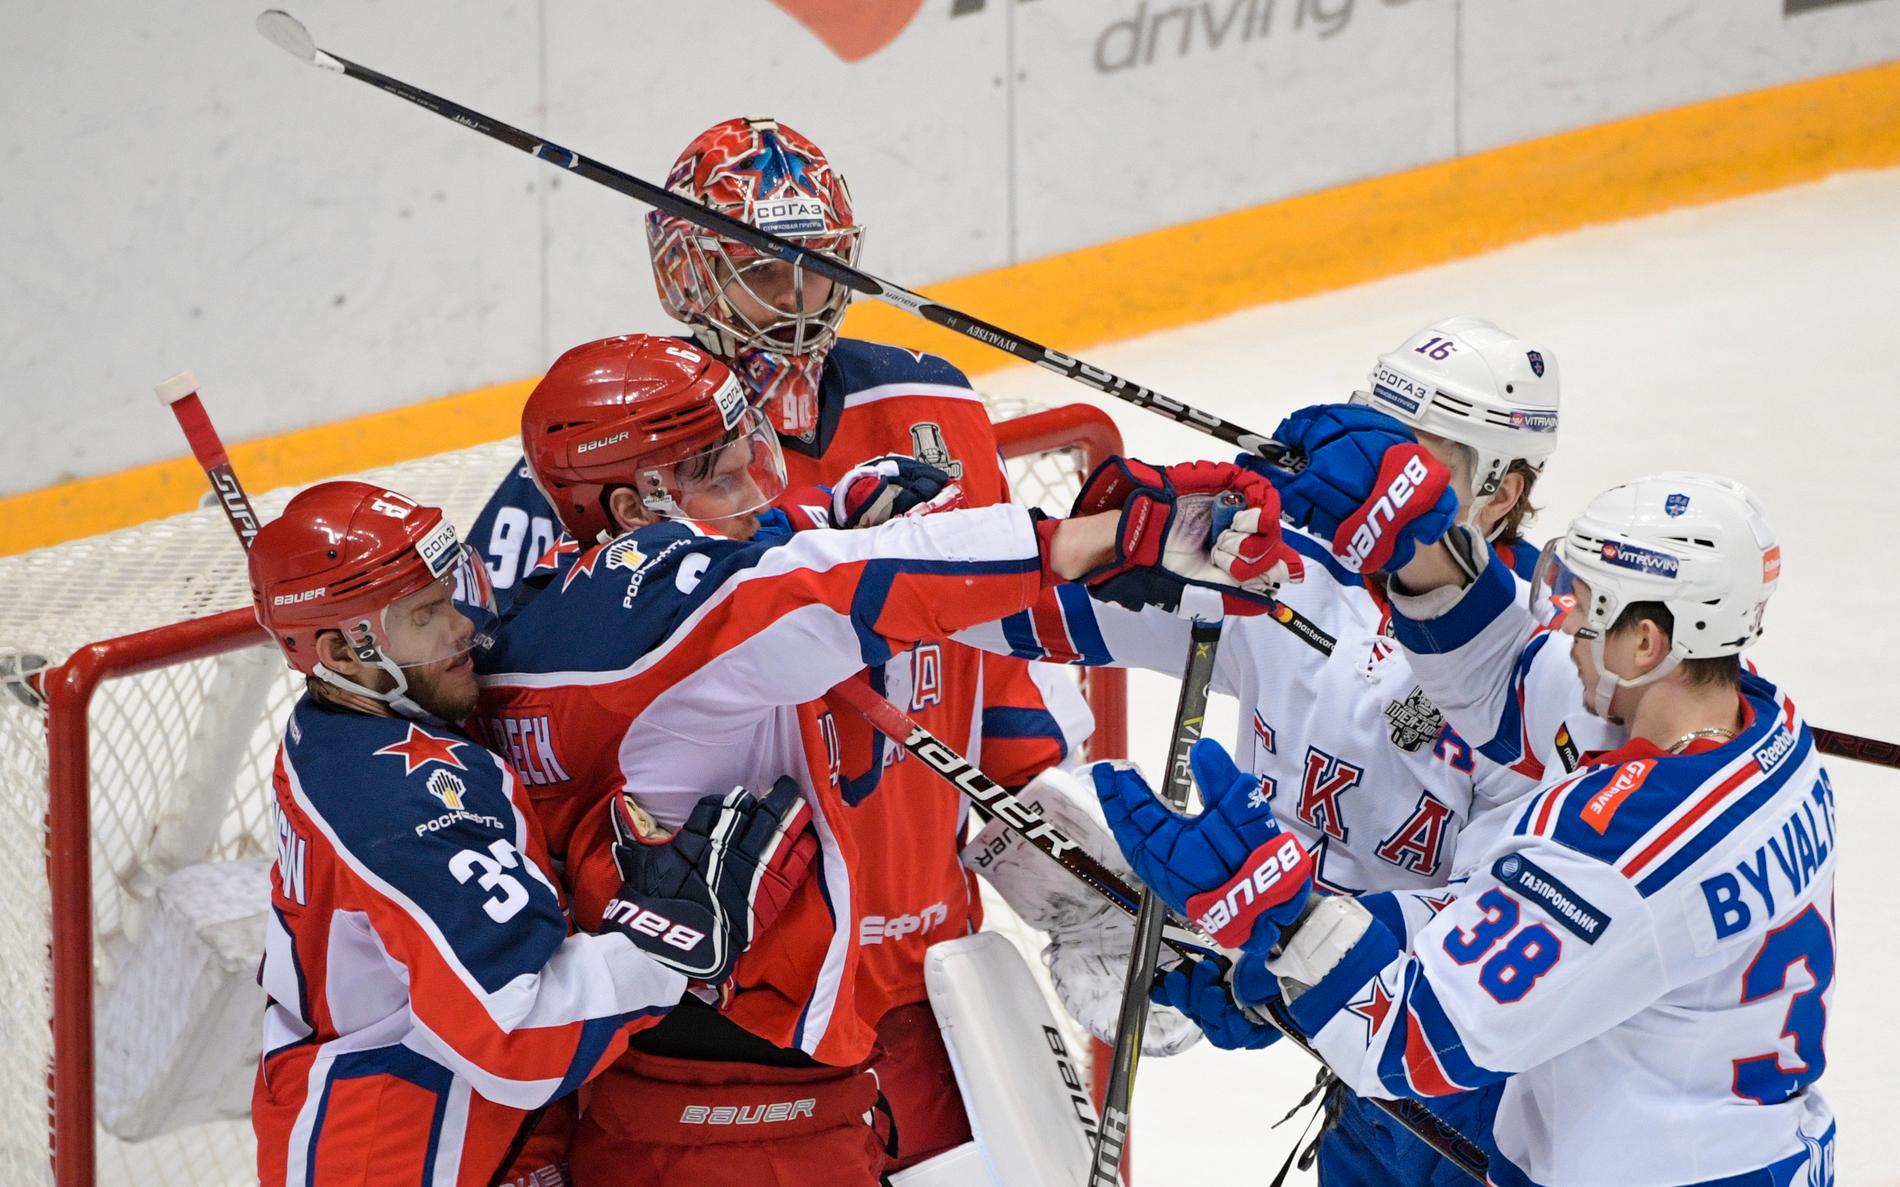 Ryska ishockeyligan KHL tar en veckas paus i slutspelet för att ändra formatet och spelprogrammet för de återstående ryska lagen. Arkivbild.